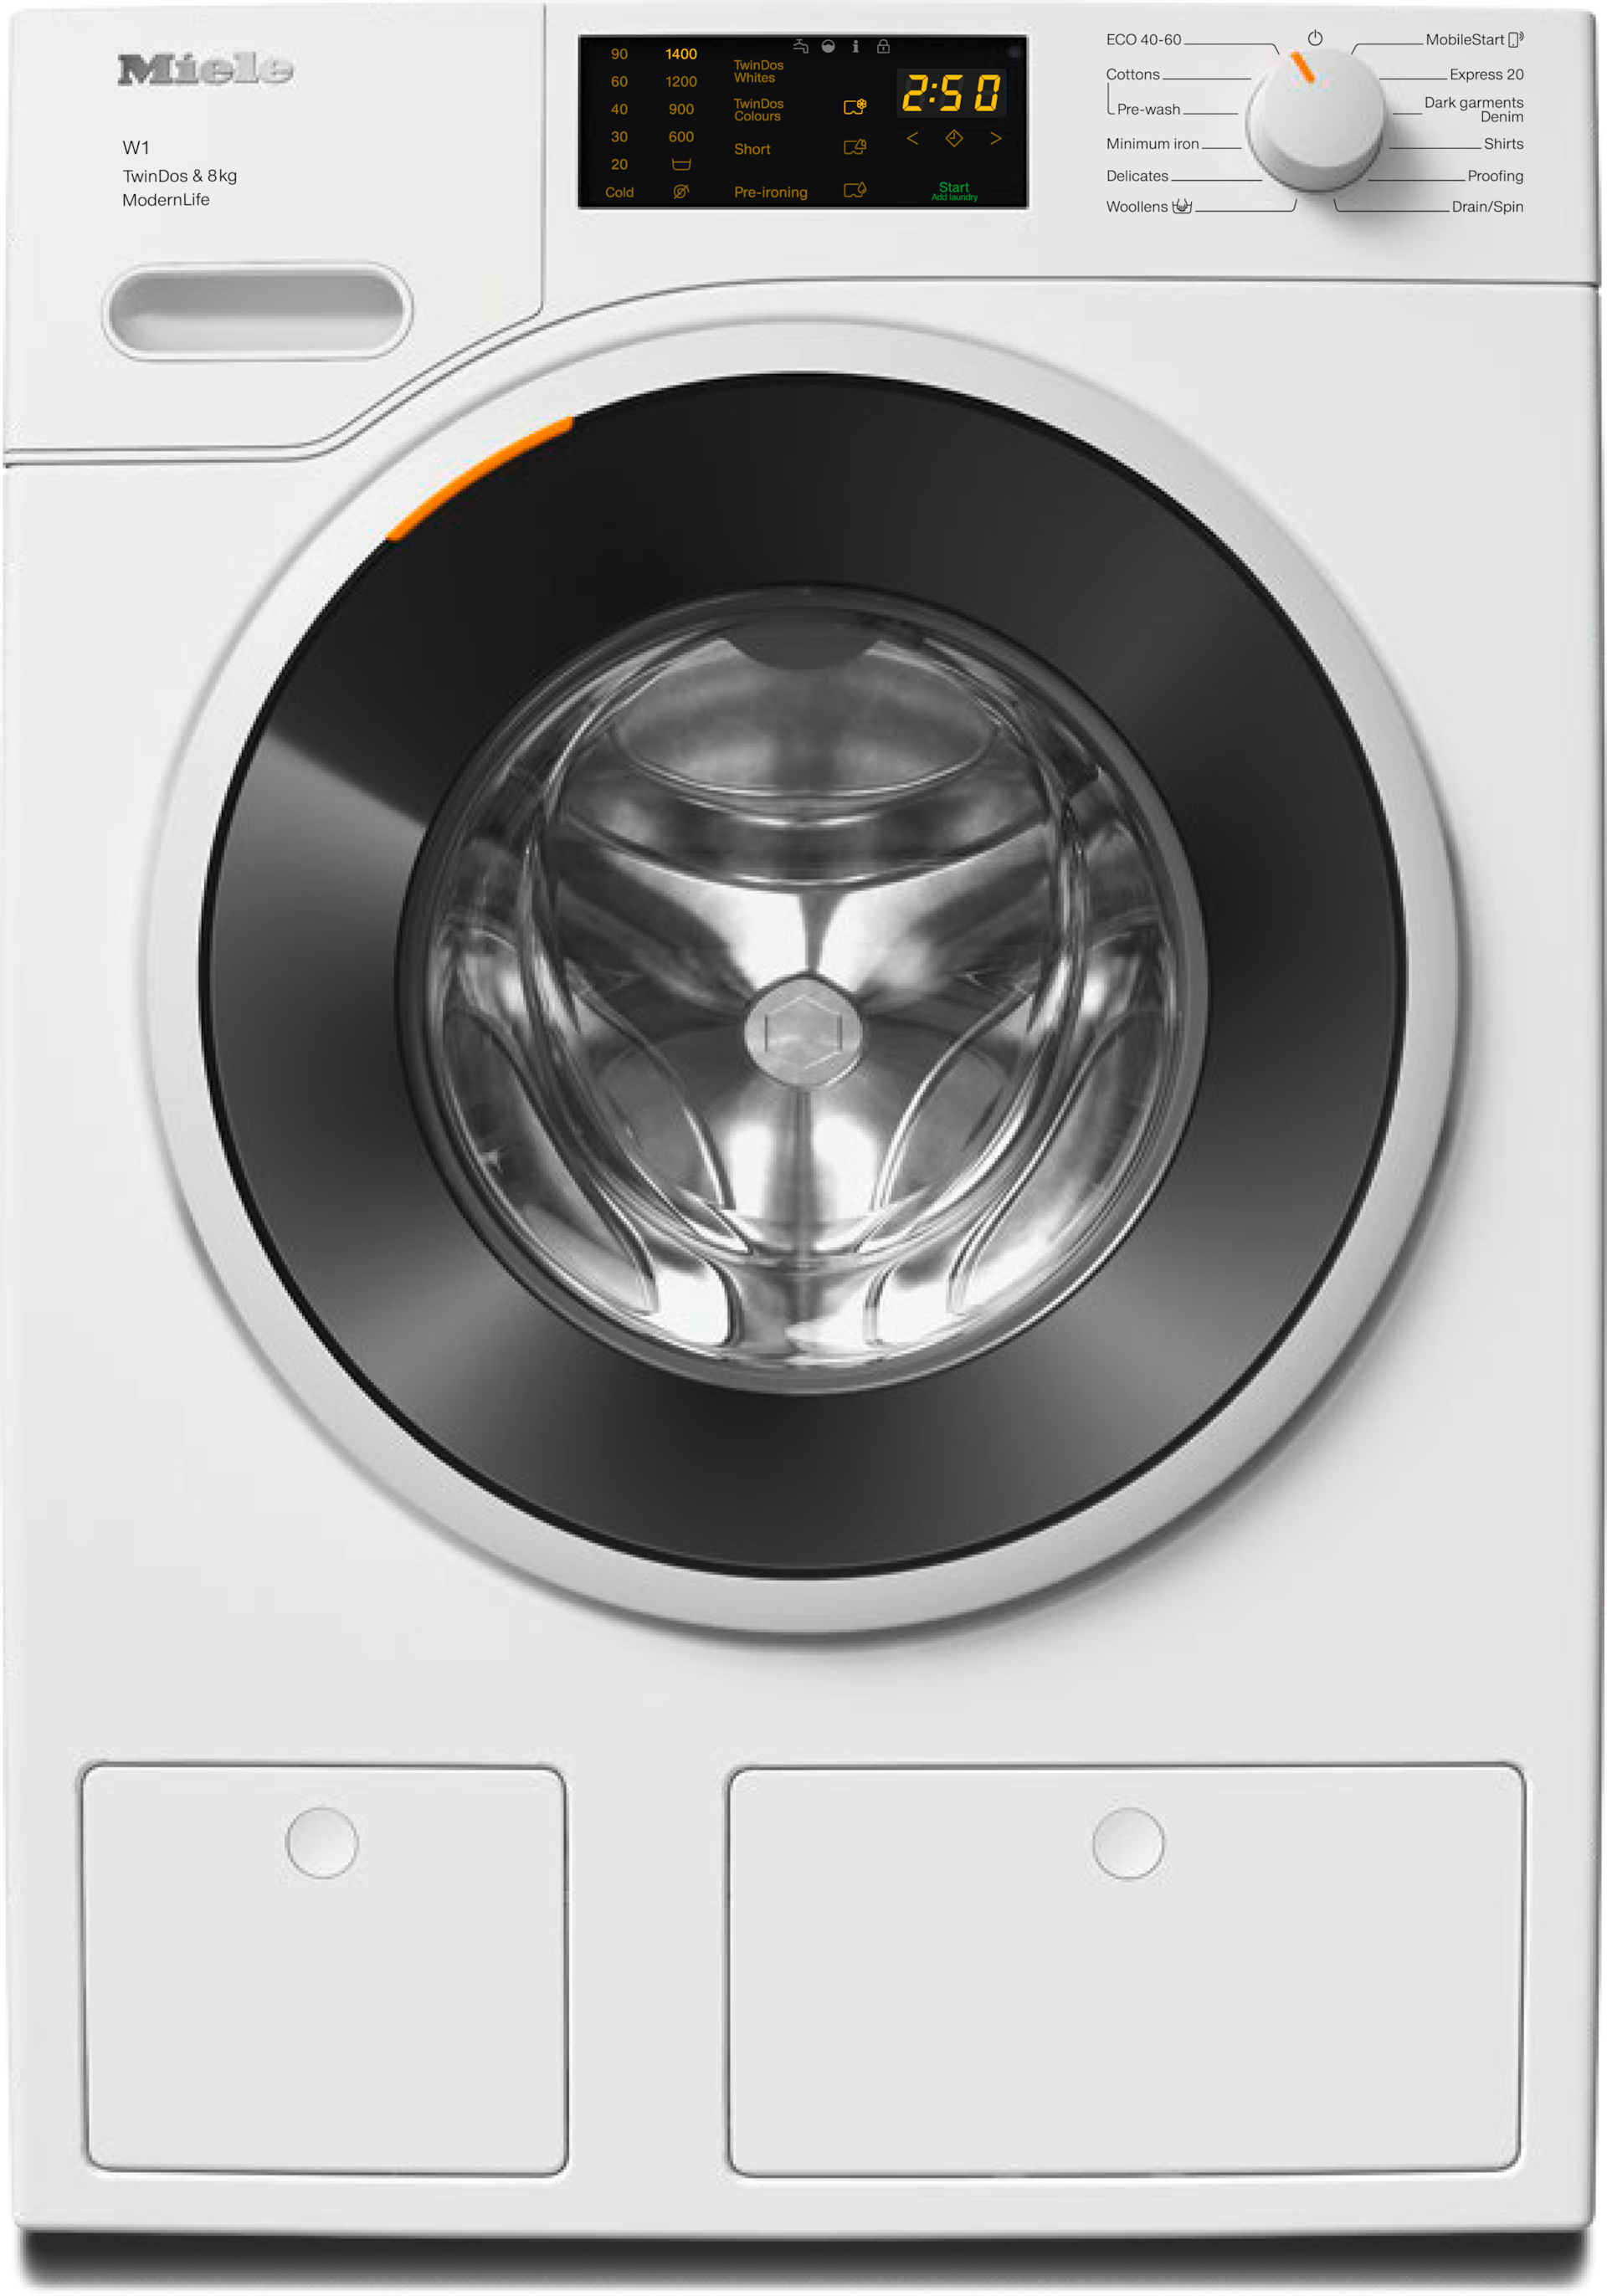 Washing machines - WWD660 WCS TDos & 8kg Lotus white - 1